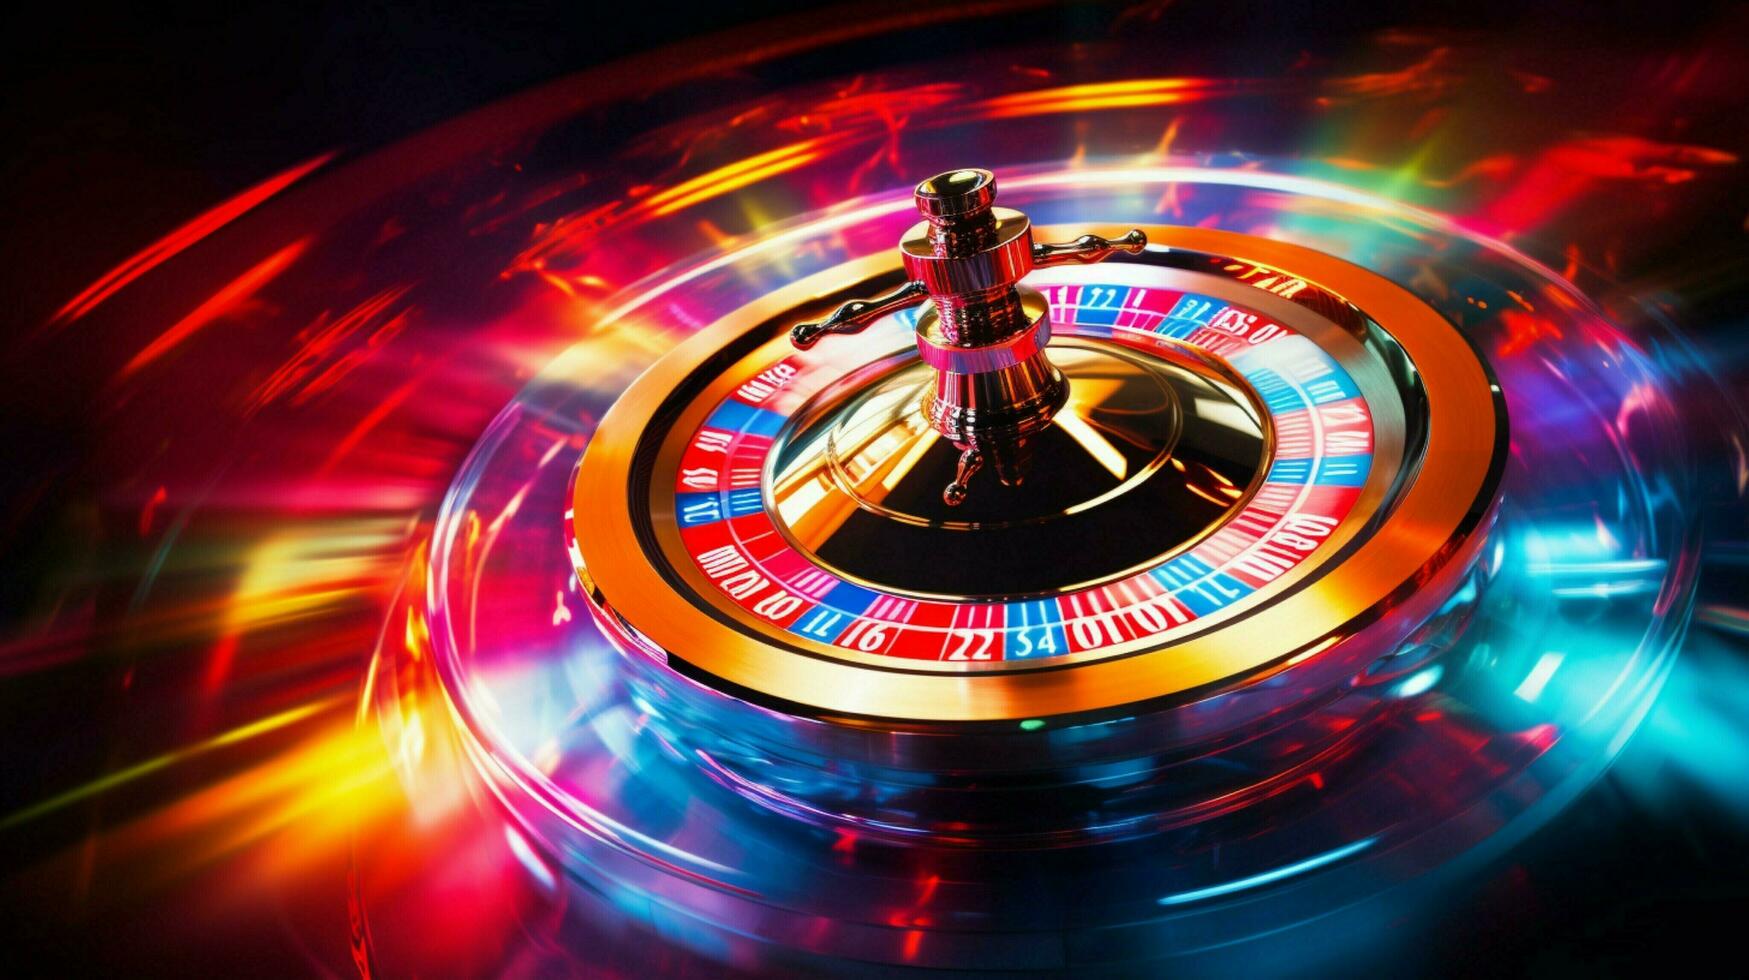 filage roulette roue apporte vibrant vie nocturne amusement photo